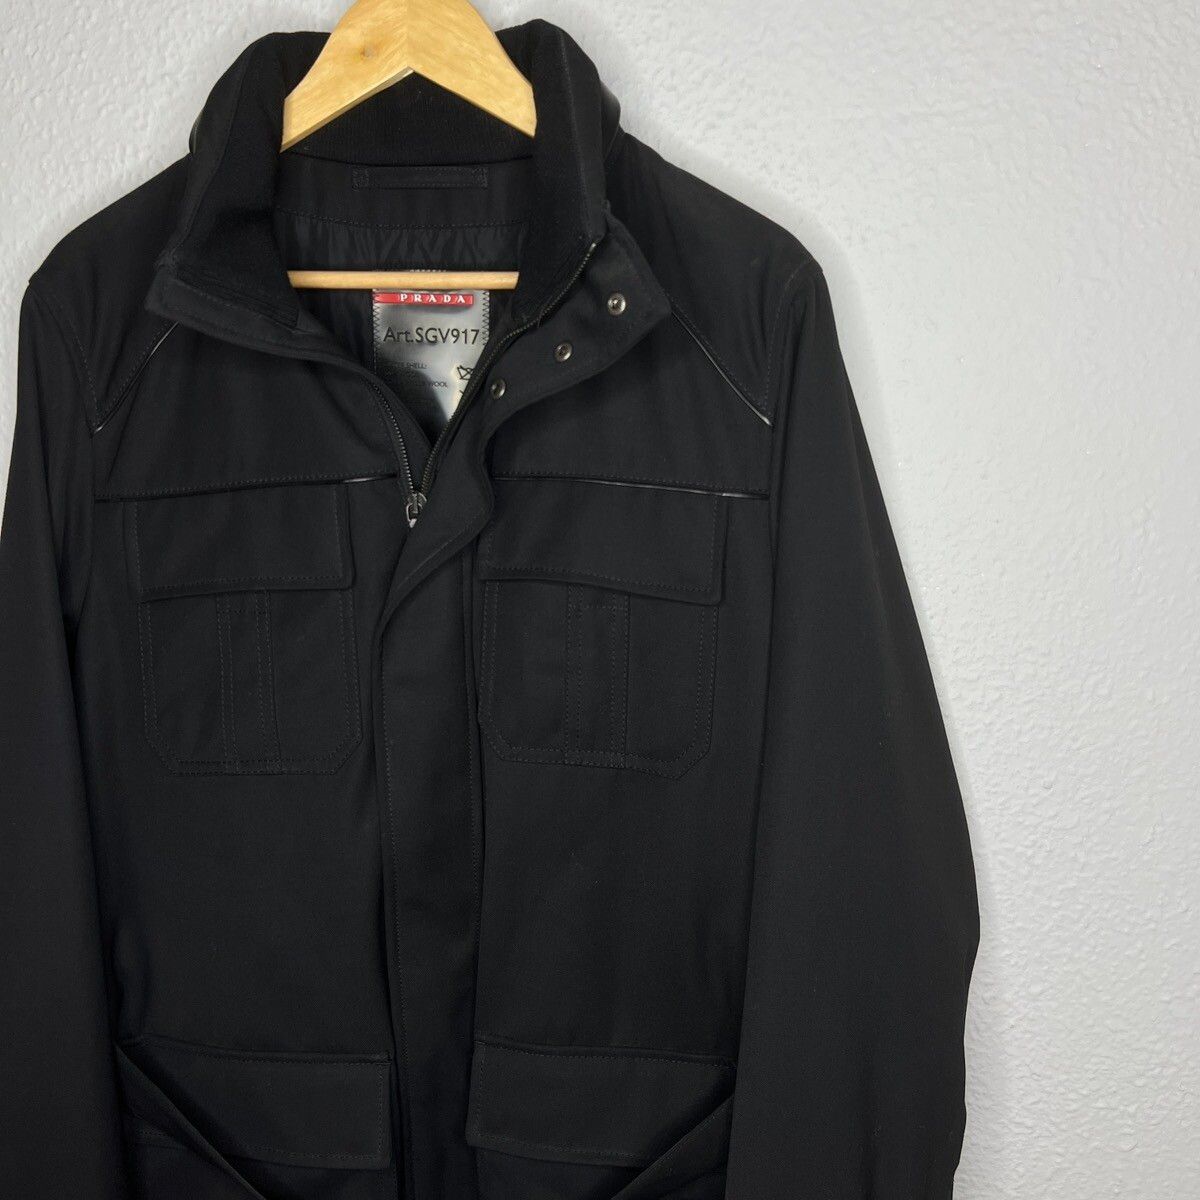 Prada Prada Milano Military Jacket Belted Coat Black Wool Designer Size US M / EU 48-50 / 2 - 3 Thumbnail